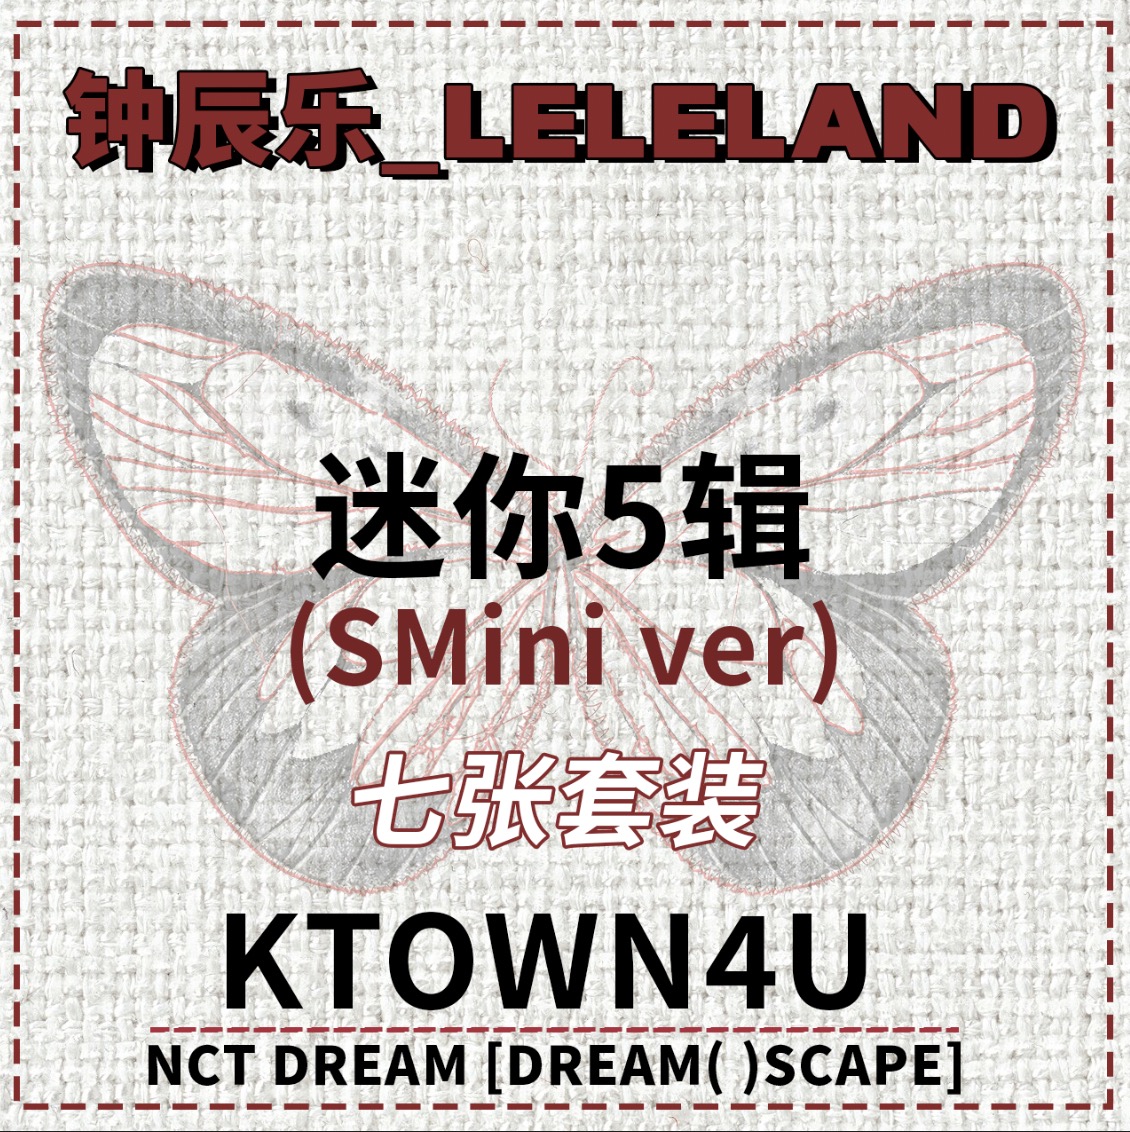 [全款 裸专] [7CD 套装] NCT DREAM - [DREAM( )SCAPE] (SMini Ver.) (Smart Album)_钟辰乐吧_ChenLeBar